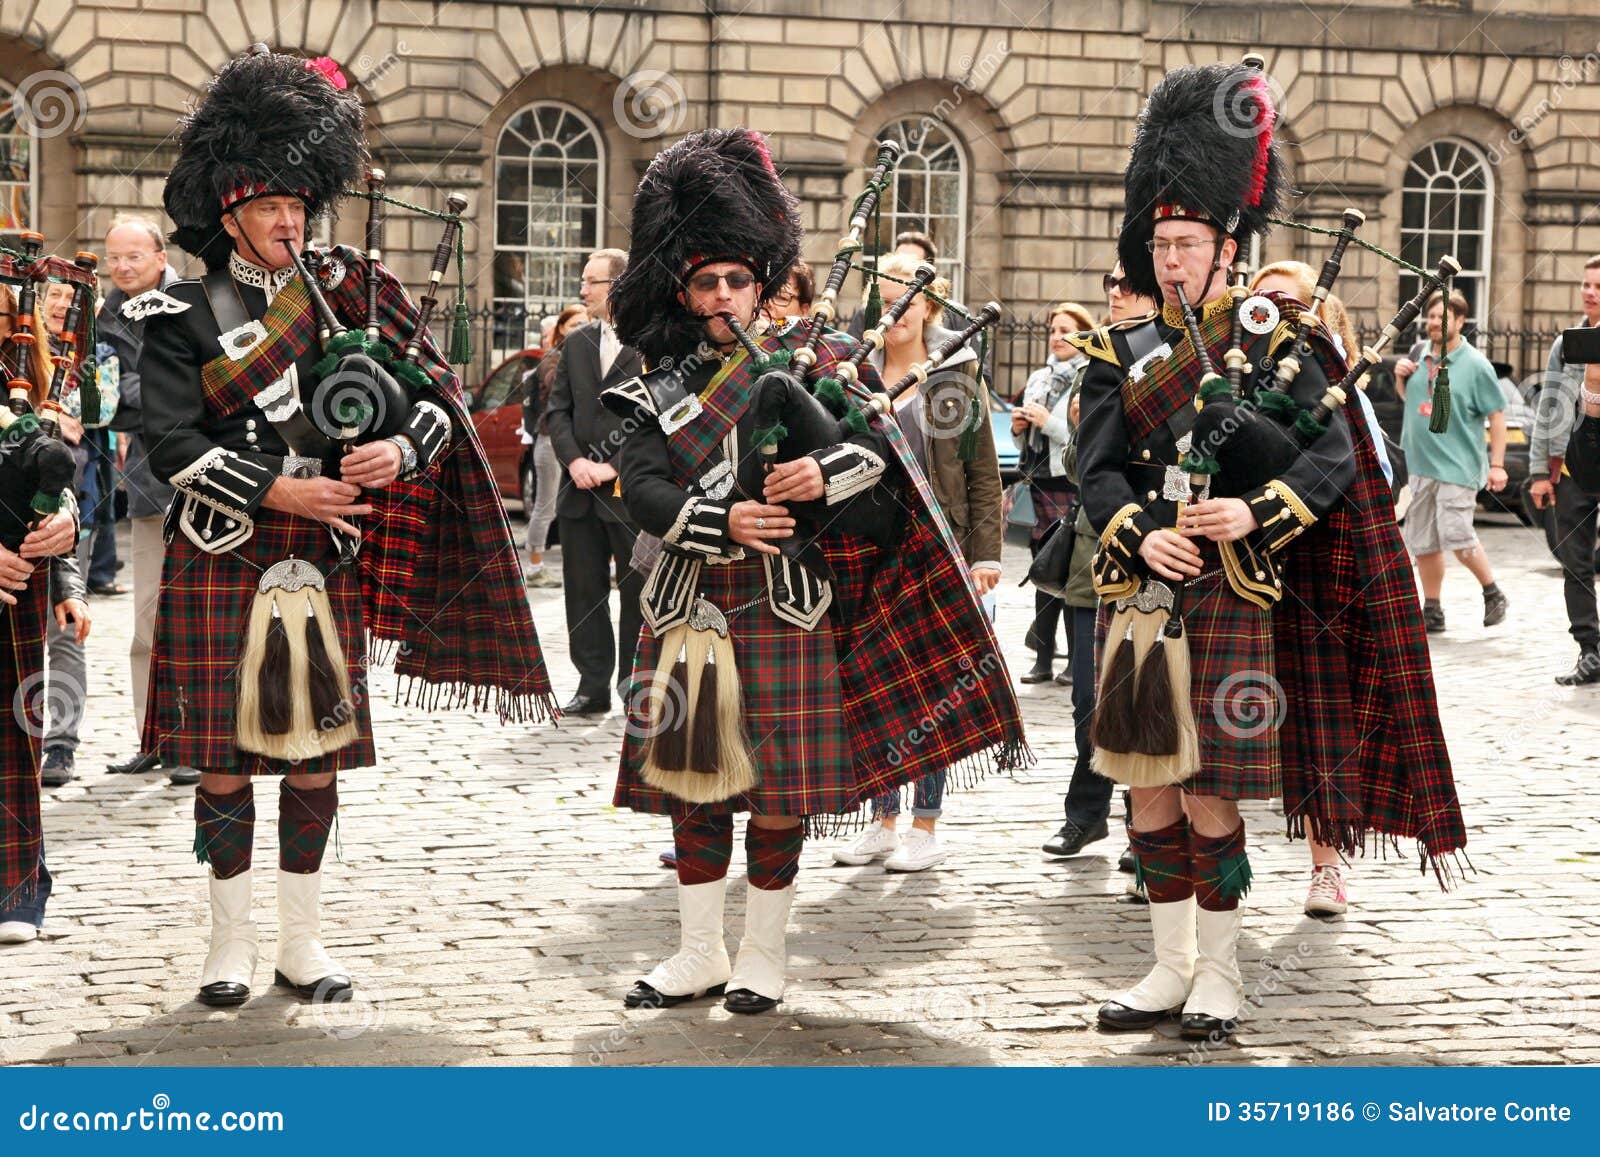 Современная английская музыка. Волынщики Шотландии. Фестиваль волынщиков в Шотландии Эдинбург. Шотландский килт и волынка. Шотландия килт военный парад.